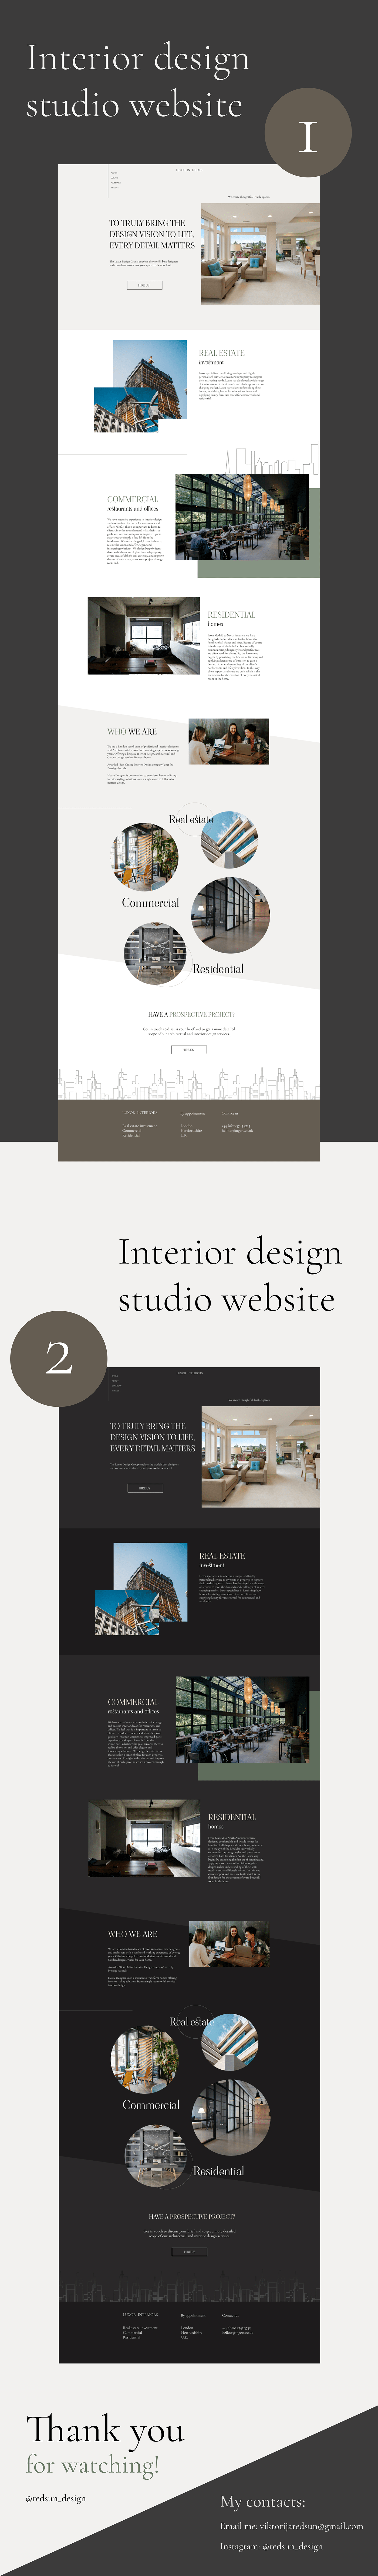 Interior interior design studio landing page Website лендинг студия интерьера